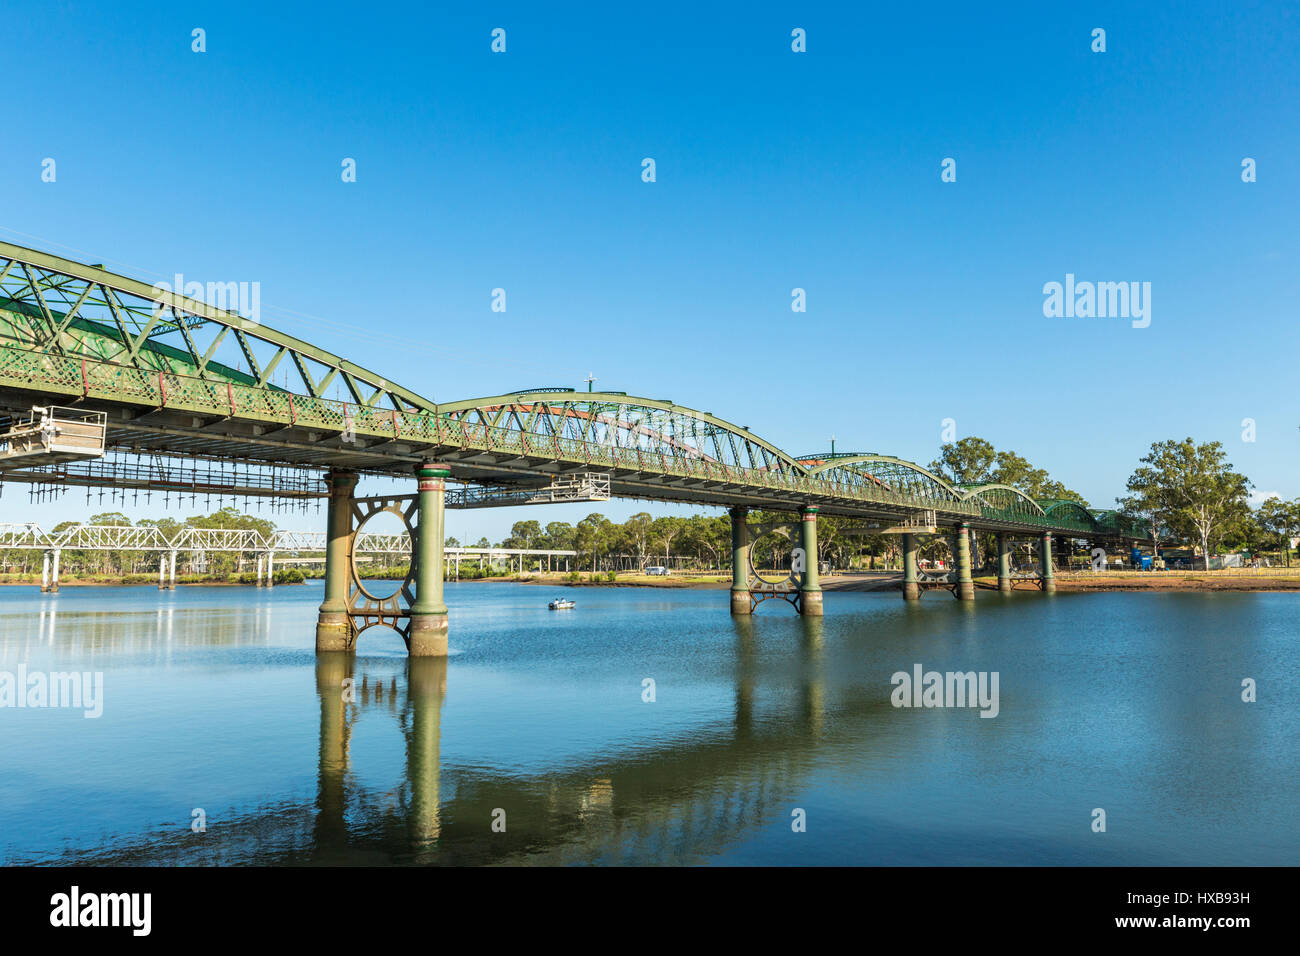 Le pont Burnett, classé au patrimoine mondial. Bundaberg, Queensland, Australie Banque D'Images